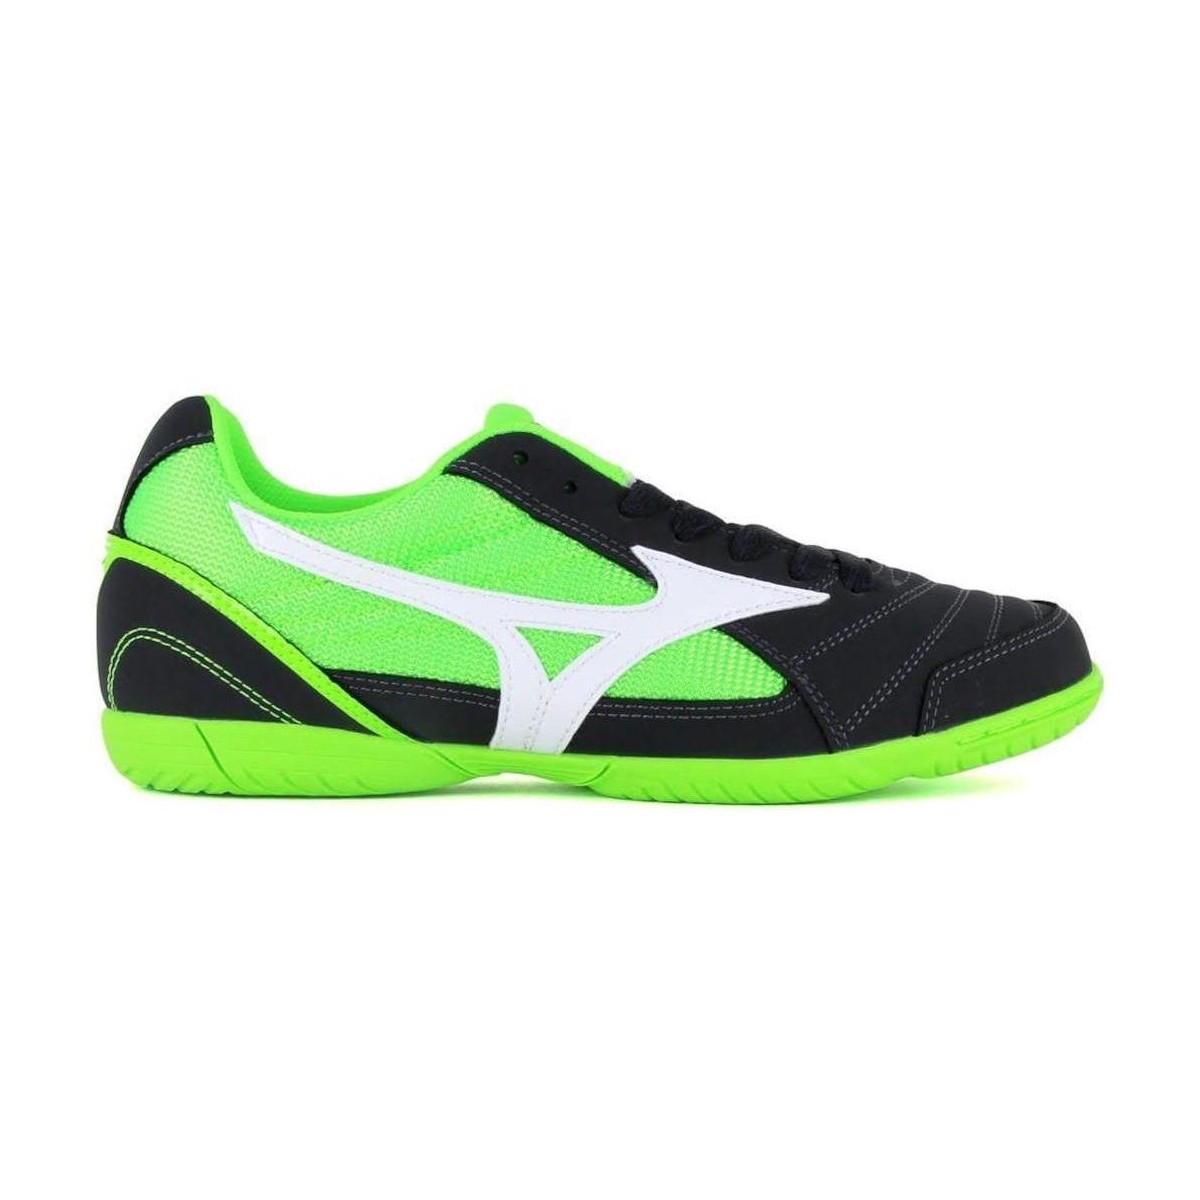 Zapatos Fútbol Mizuno Q1GA175105 Multicolor